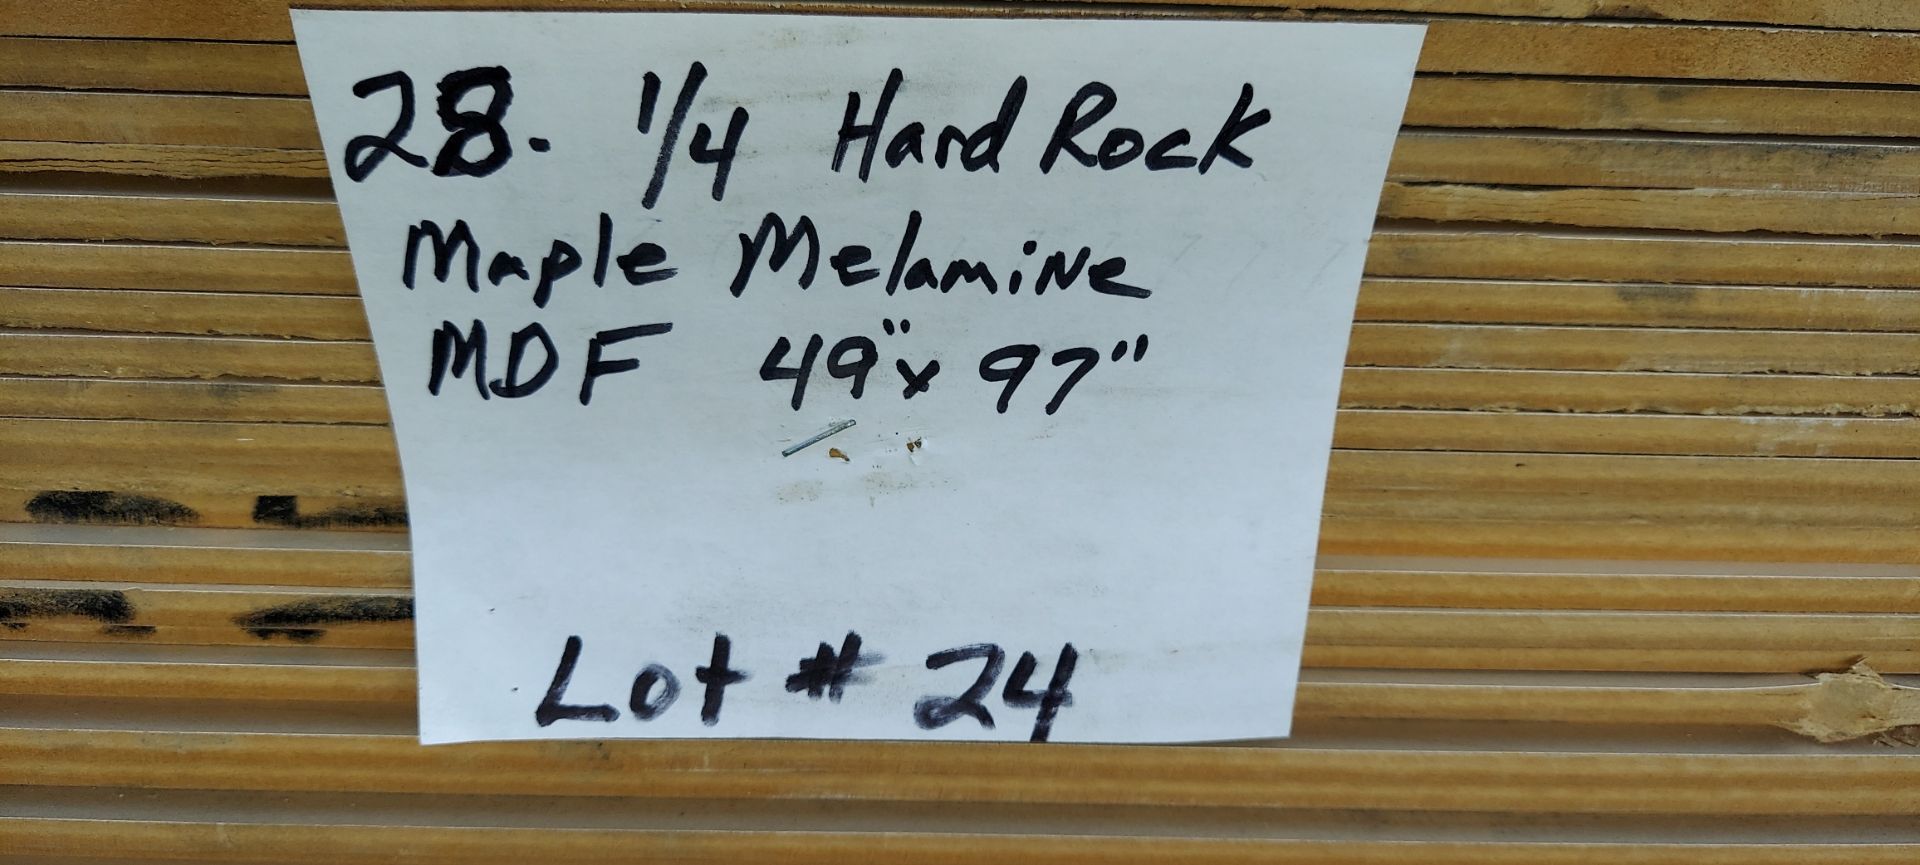 28 Sheets - 1/4" Hard Rock Maple Melamine MDF 49” X 97” - Image 5 of 5